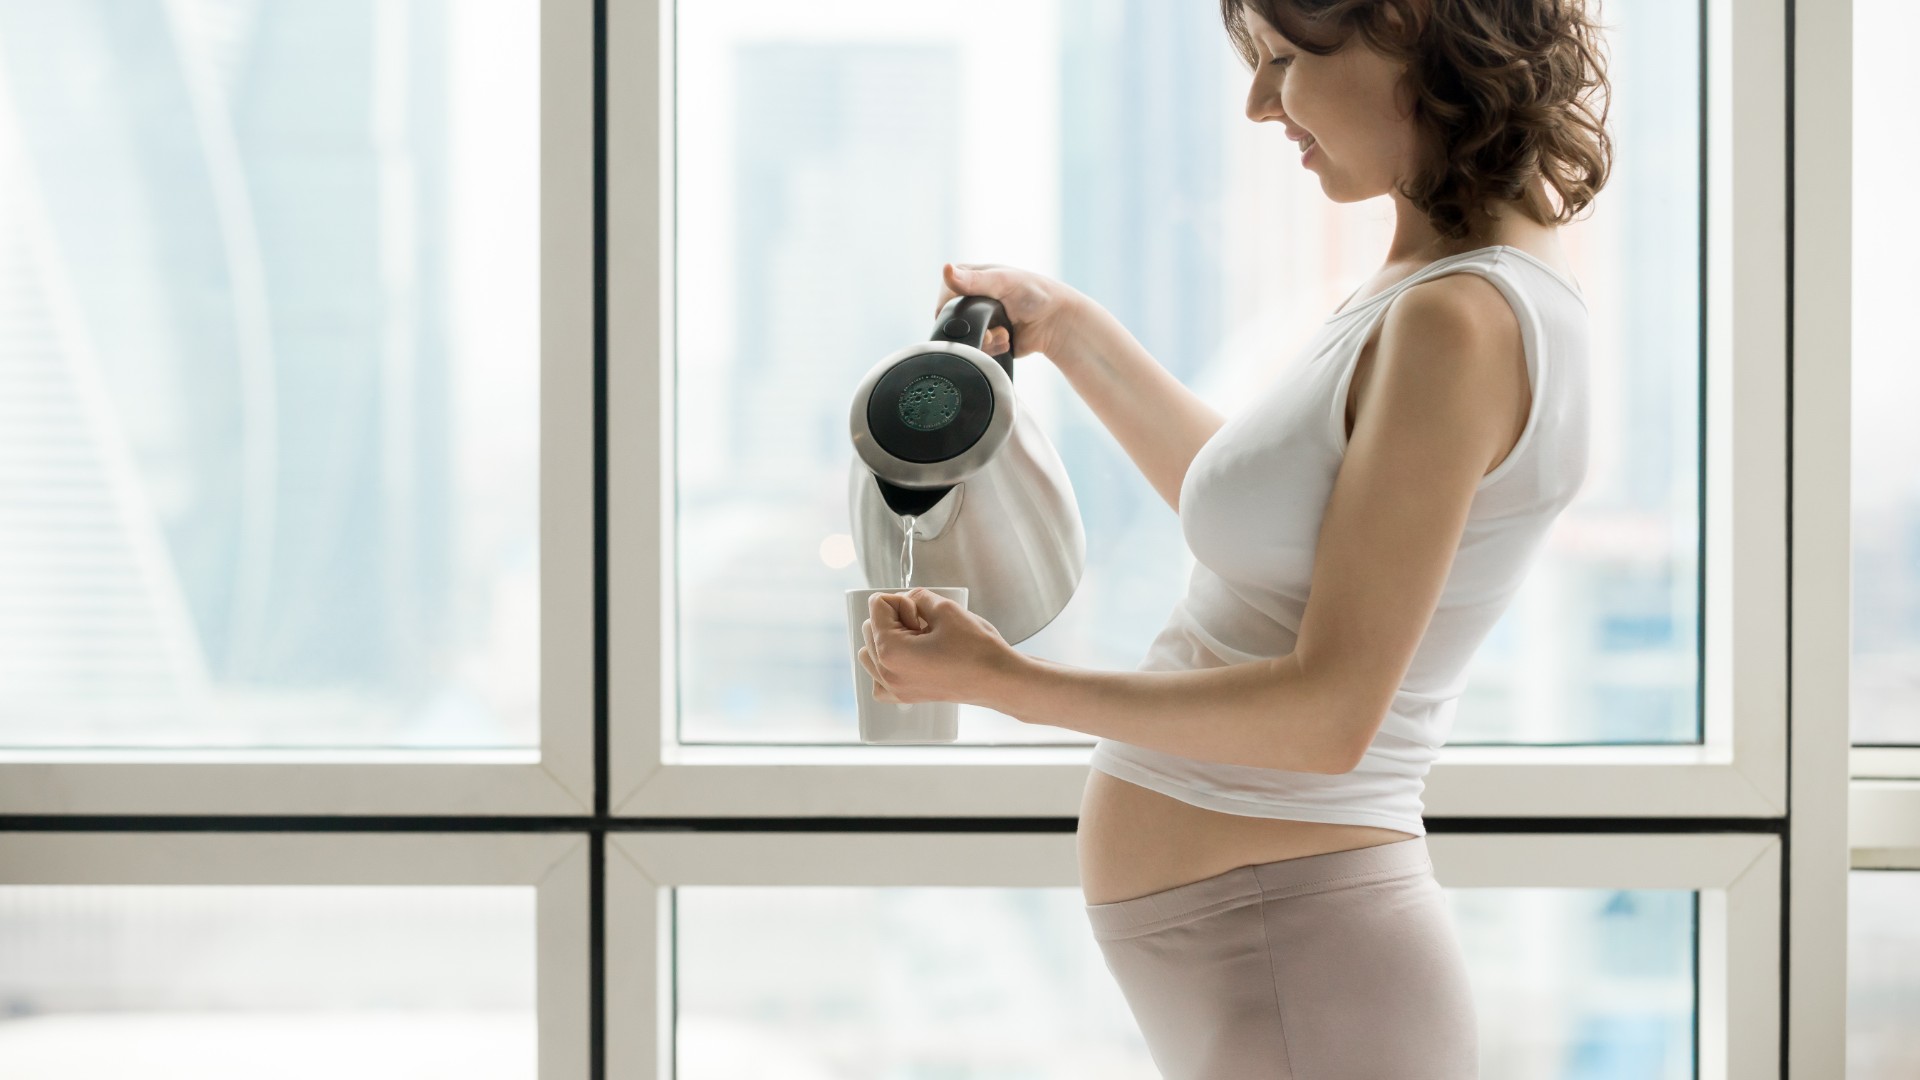 Foto de capa do artigo "Chás que grávidas não podem tomar: veja quais são"